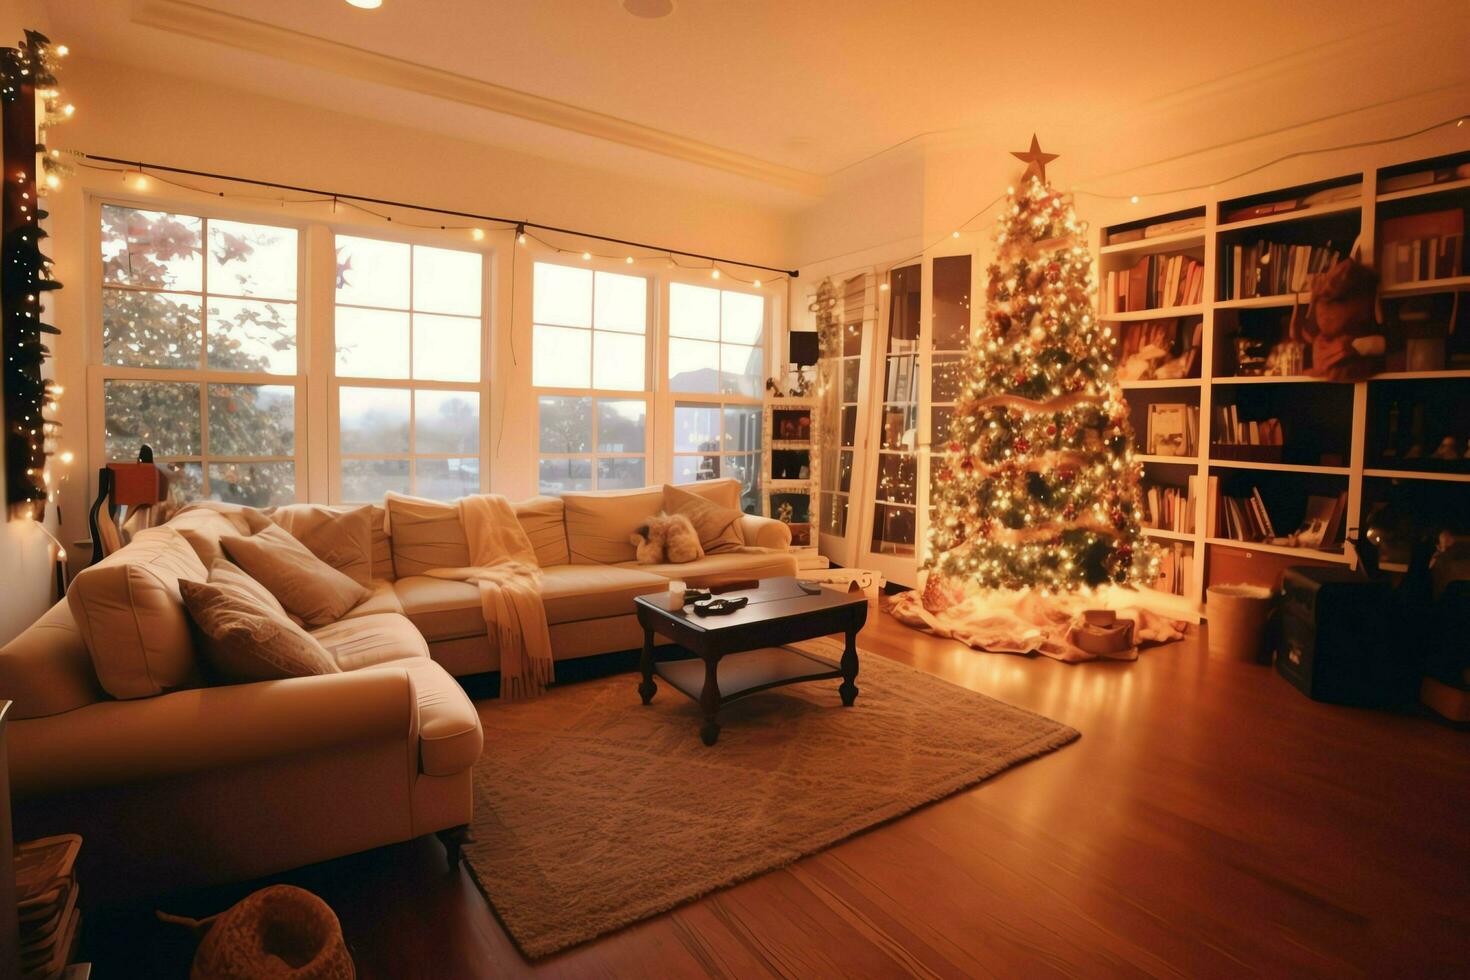 acolhedor vivo quarto com lindo Natal árvore e vermelho presentes dentro moderno interior. interior do vivo quarto decorado para alegre Natal com meias, presente caixas e Natal acessórios de ai gerado foto